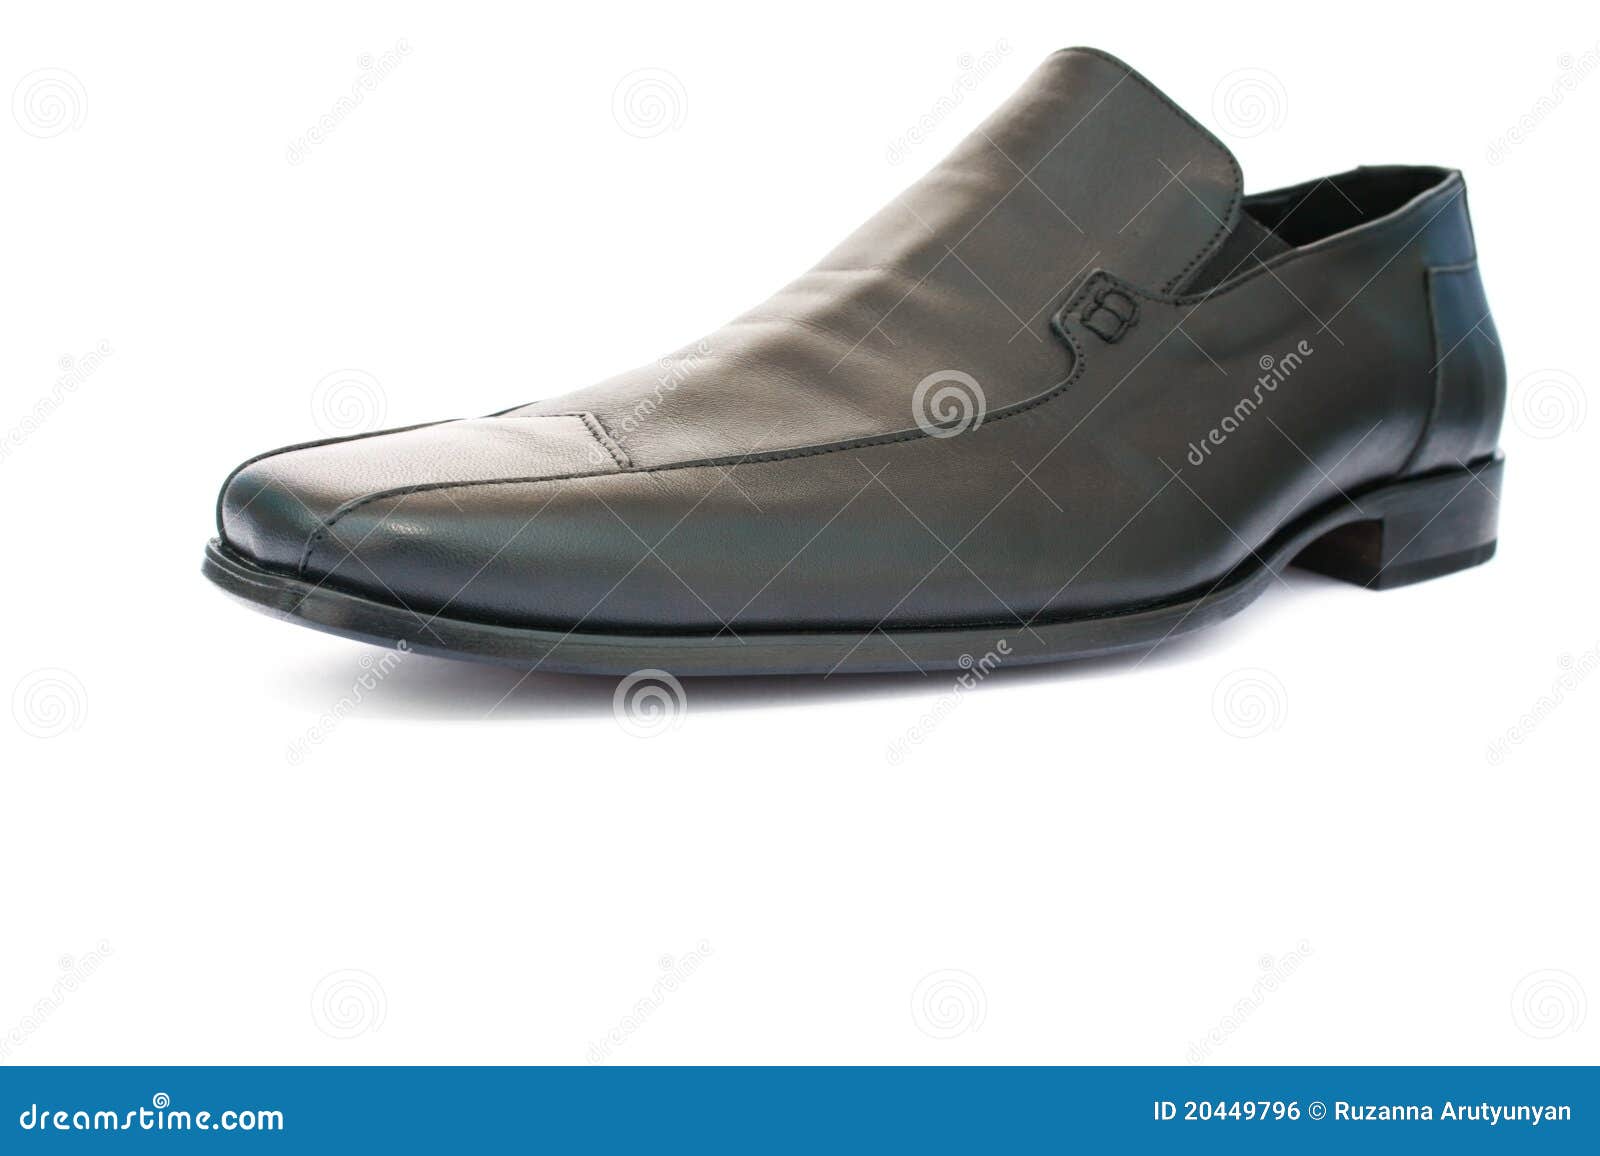 Black shoe stock photo. Image of footwear, foot, formalwear - 20449796